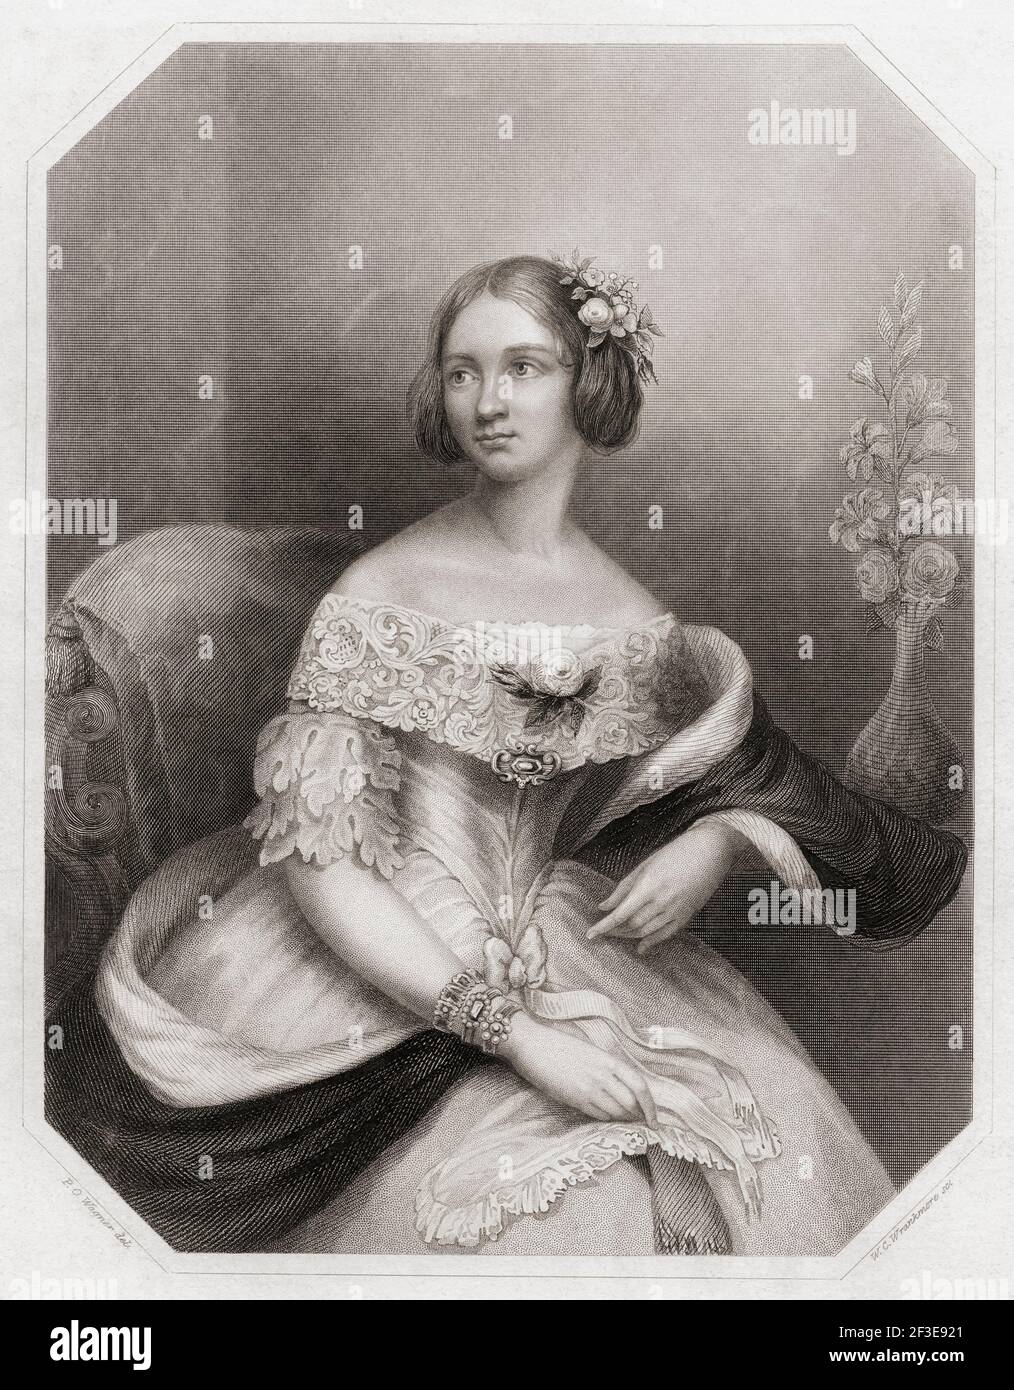 Jenny Lind, nome completo Johanna Maria Lind, 1820 - 1887. Cantante lirico svedese, conosciuto come il Nightingale svedese, che è stato una sensazione in tutta Europa e negli Stati Uniti. Da un'incisione del 19th secolo di W.C. Wrankmore dopo un lavoro di P.O. Wagner. Foto Stock